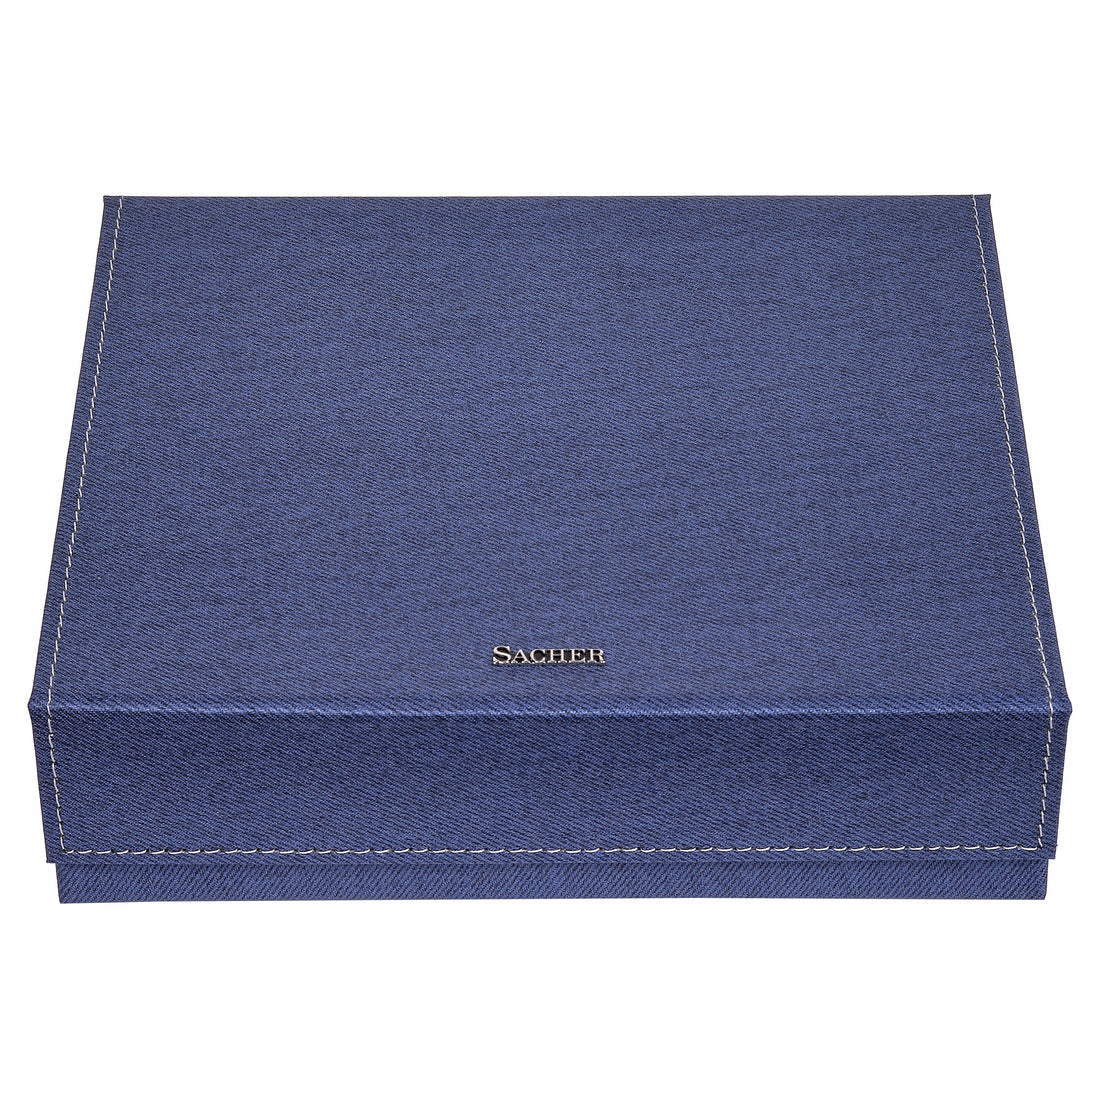 Schmuckbox Nora denim / Store SACHER Offizieller Manufaktur 1846 – blau 